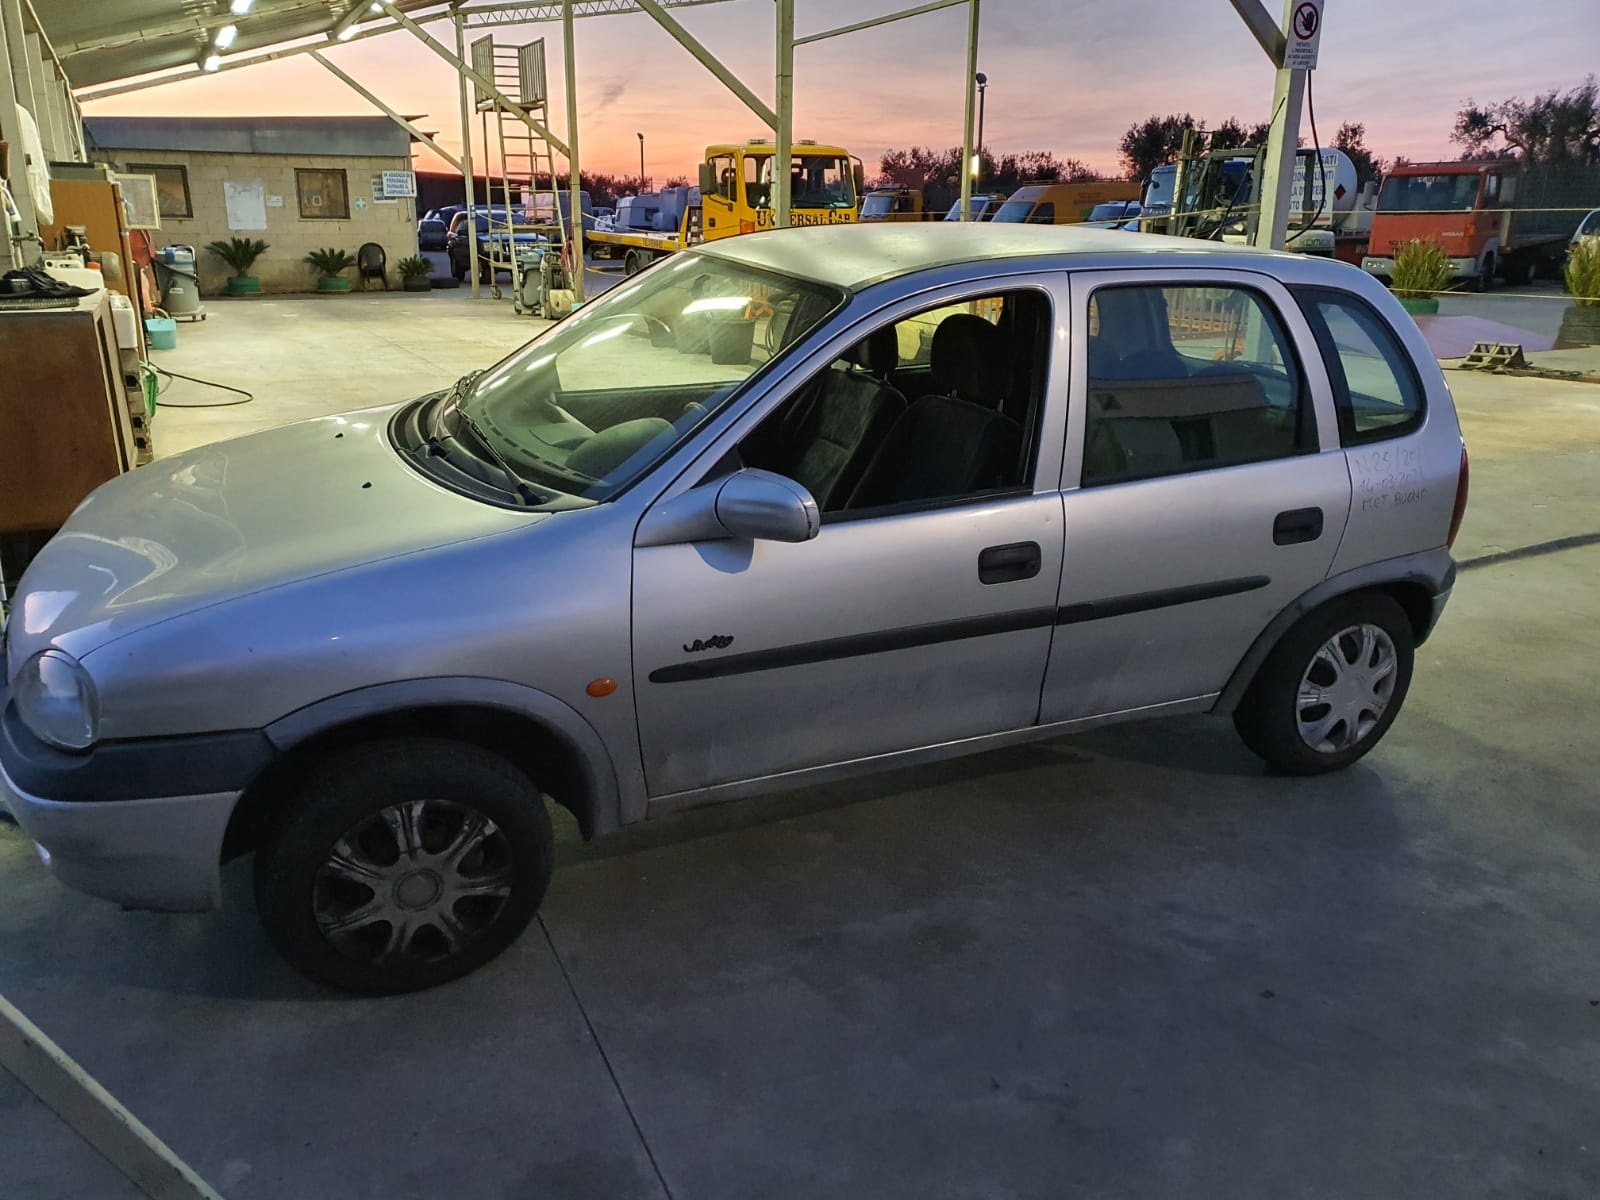 Scopri di più sull'articolo Opel Corsa 1.2 benzina disponibile nel nostro autoparco di demolizione per la vendita dei ricambi usati; info solo telefonando al 348 58 46 422.